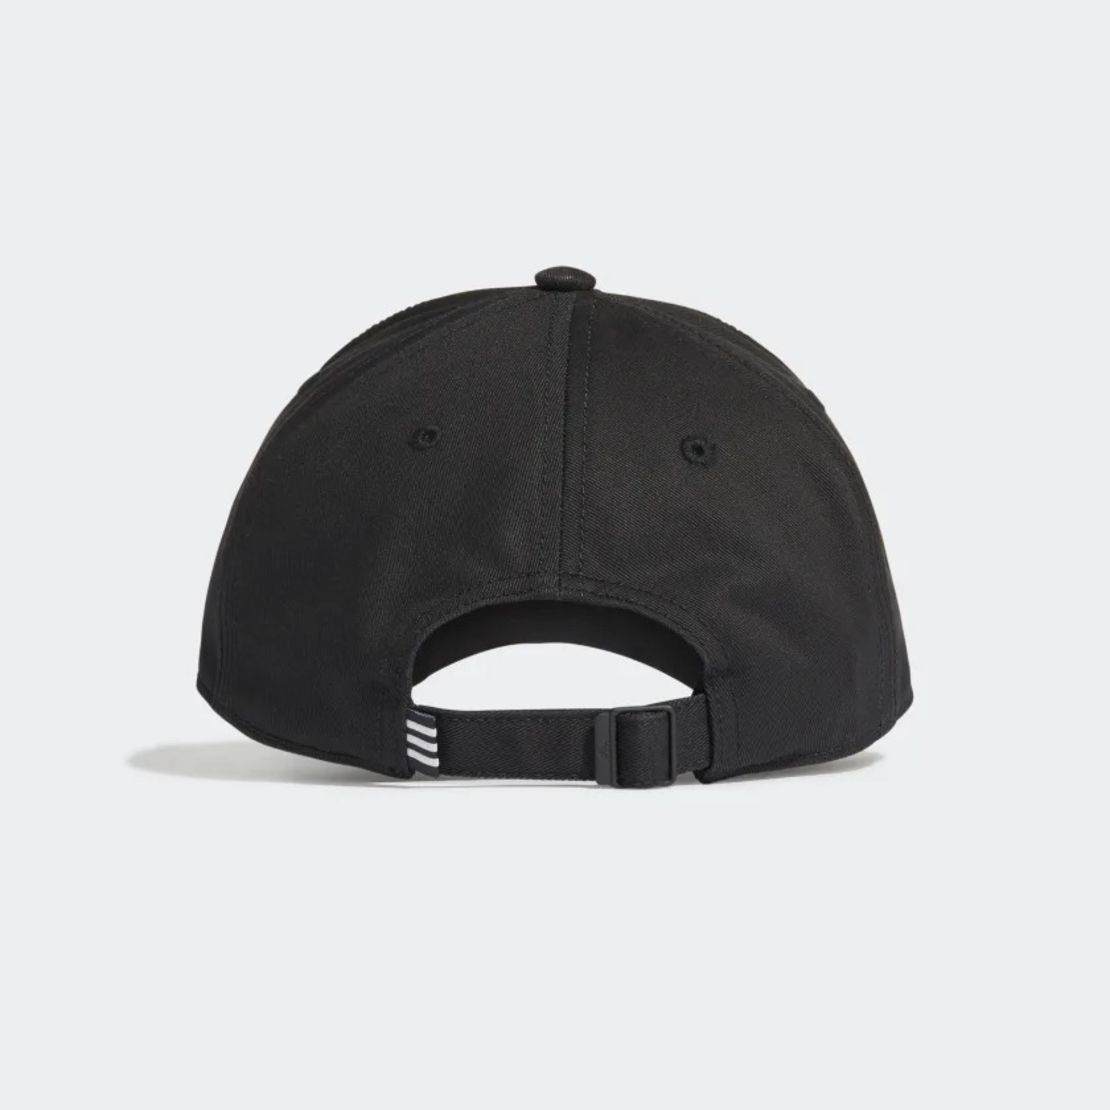 כובע אדידס | Adidas 3S Twill Cap